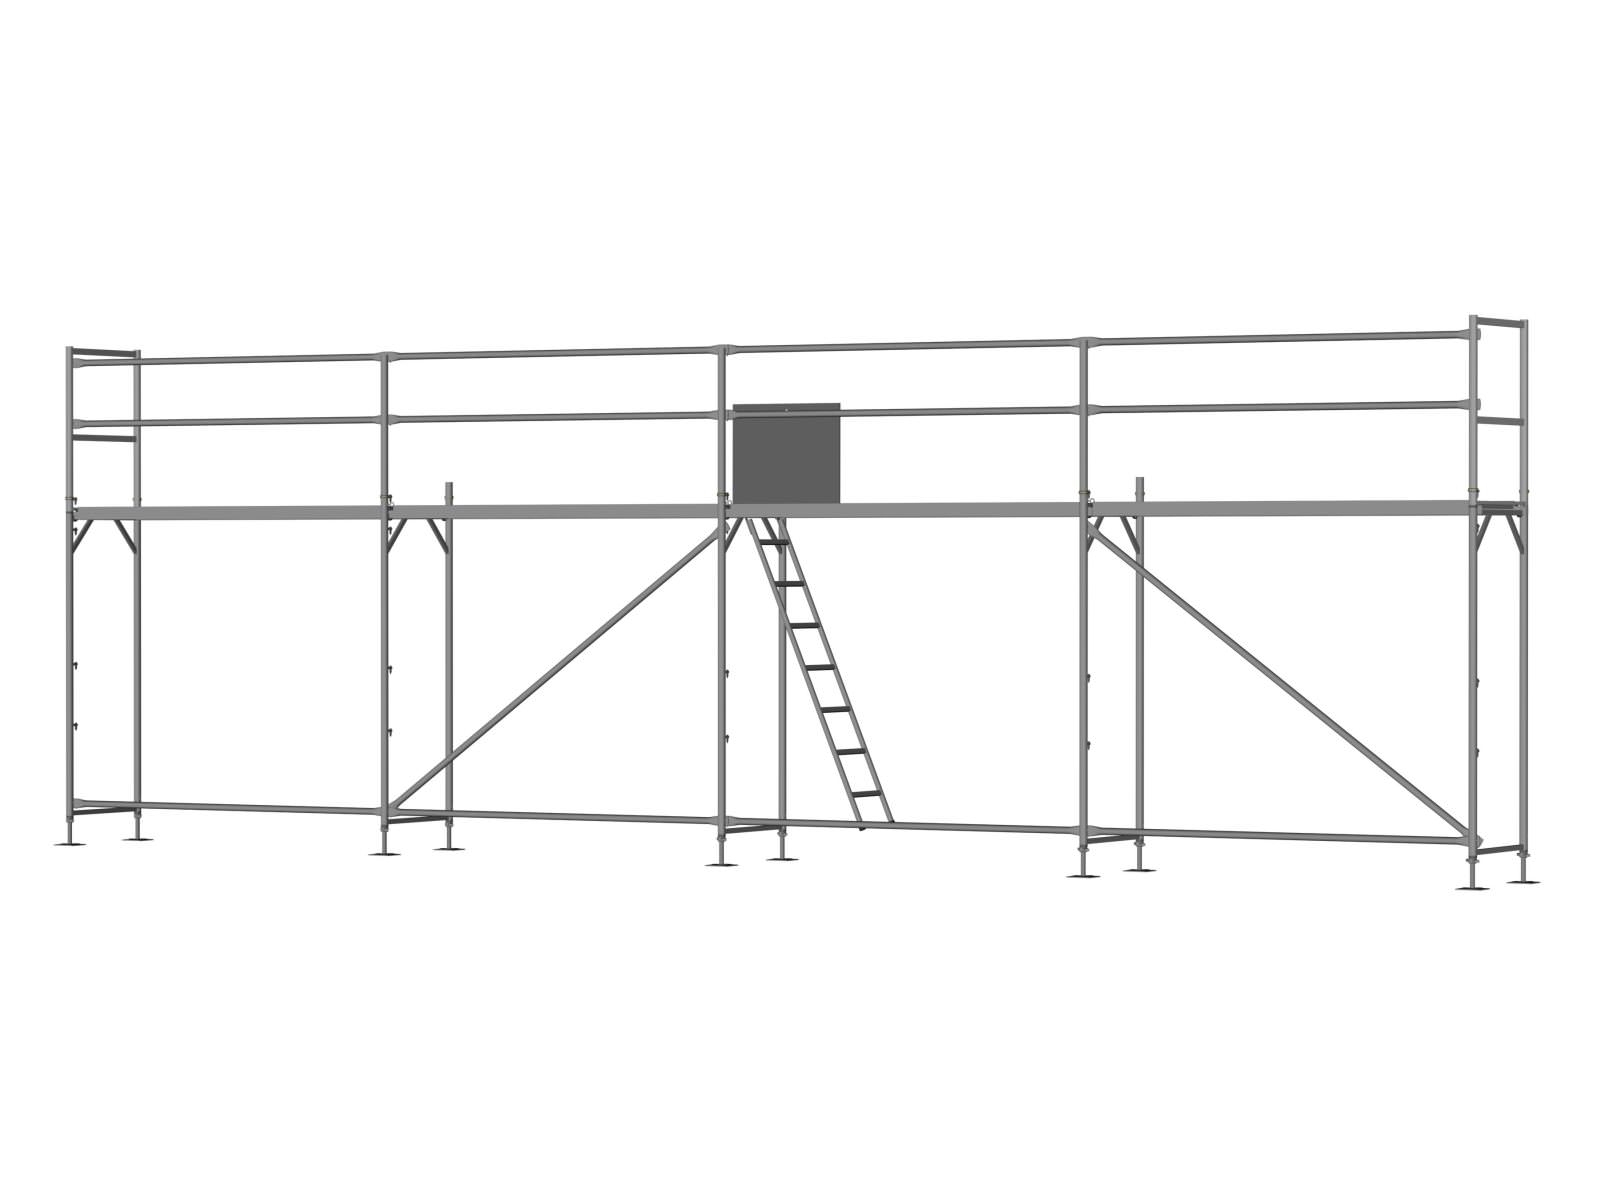 Stahl Traufseitengerüst 40 qm - 2,5 m Felder - 10 m lang - 4 m Arbeitshöhe, inkl. Aufstieg & Befestigung